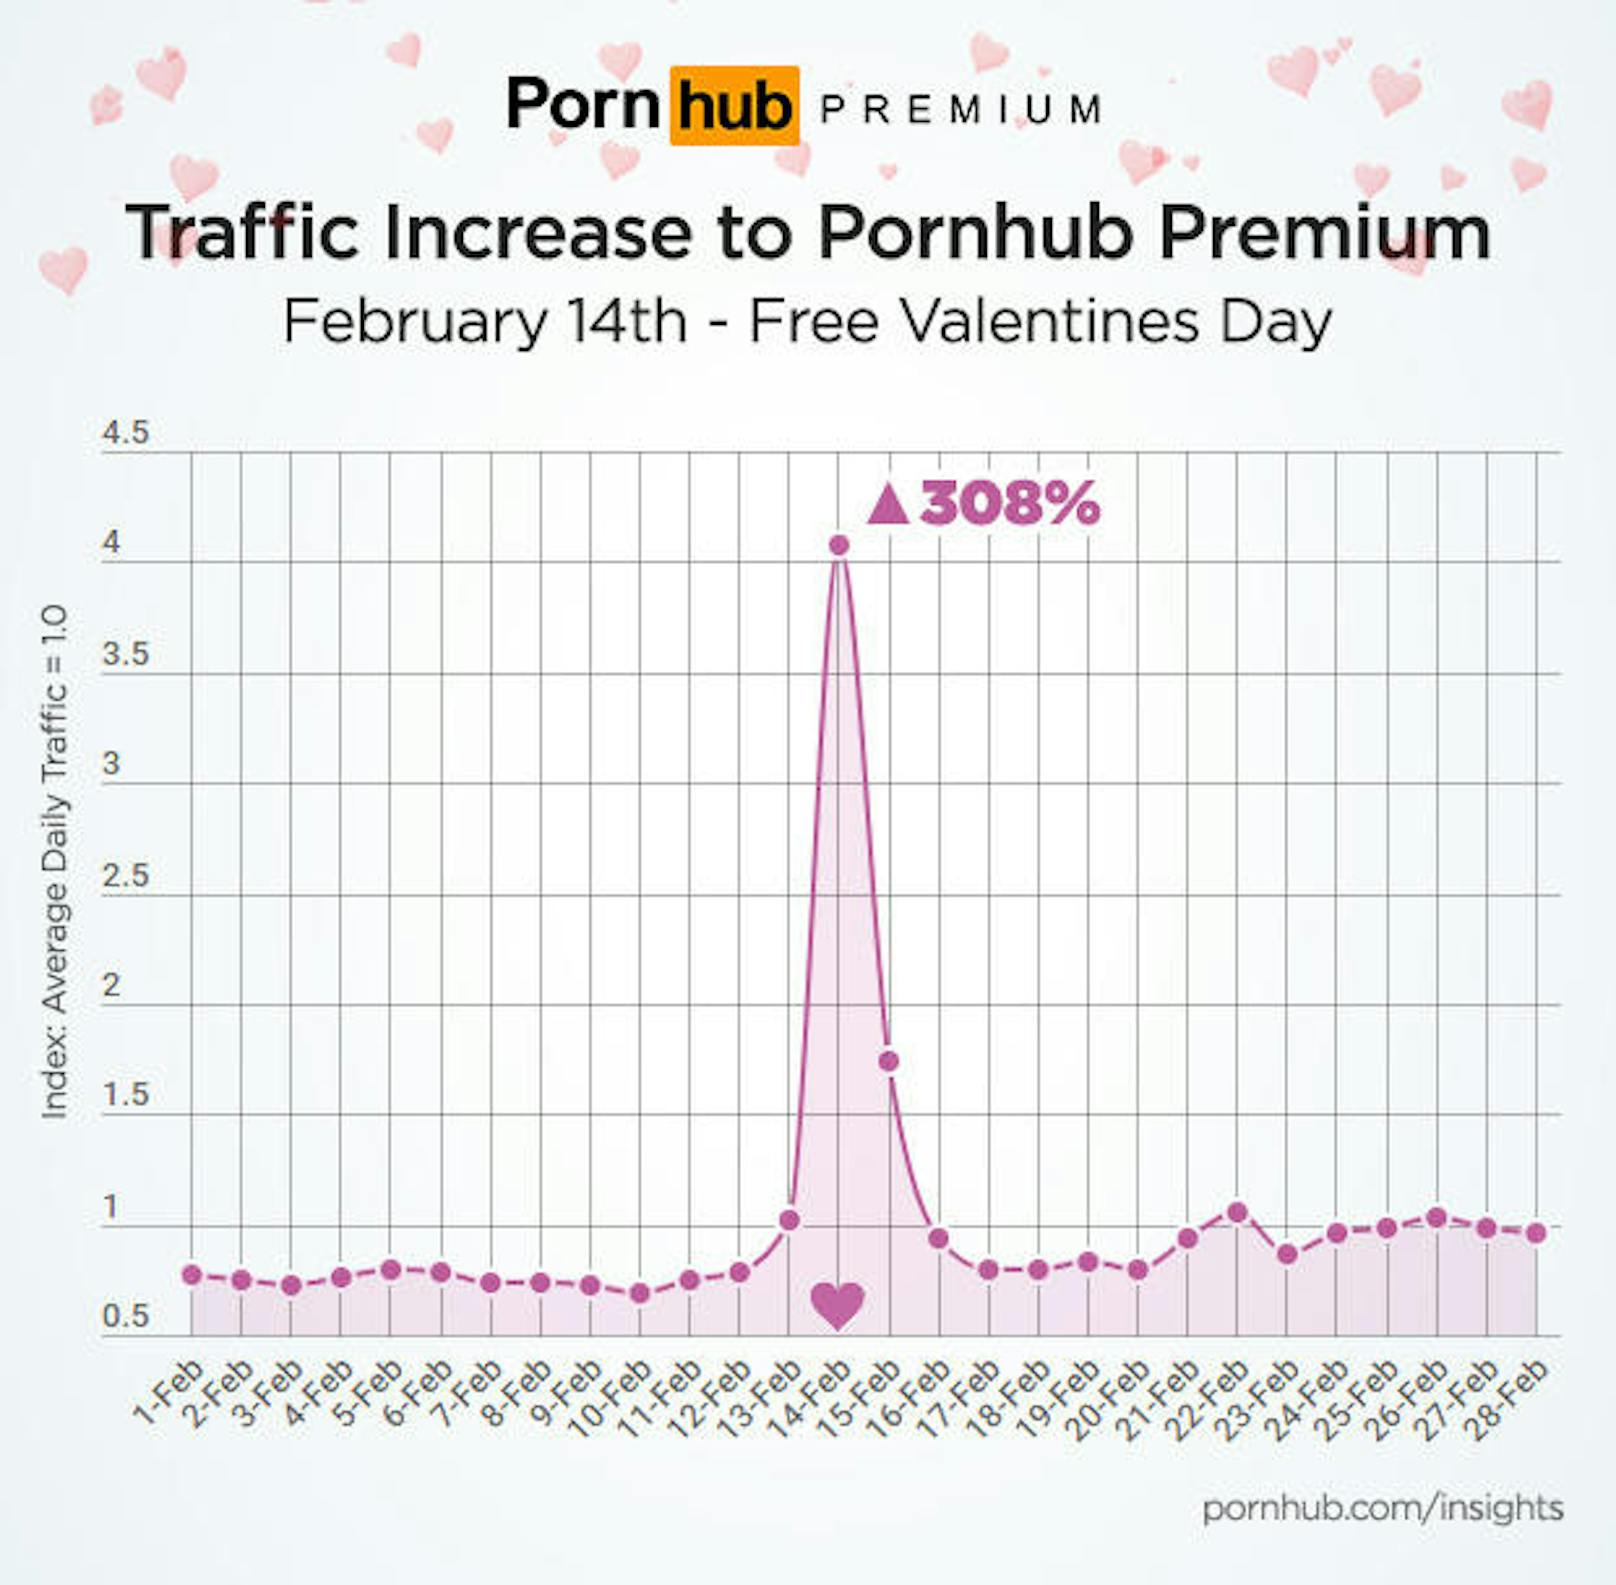 Am Valentinstag bietet das Porno-Portal Pornhub seinen Usern gratis Premium-Zugang. Die Folge: Der Internet-Traffic der Nutzer schießt um das Dreifache nach oben.